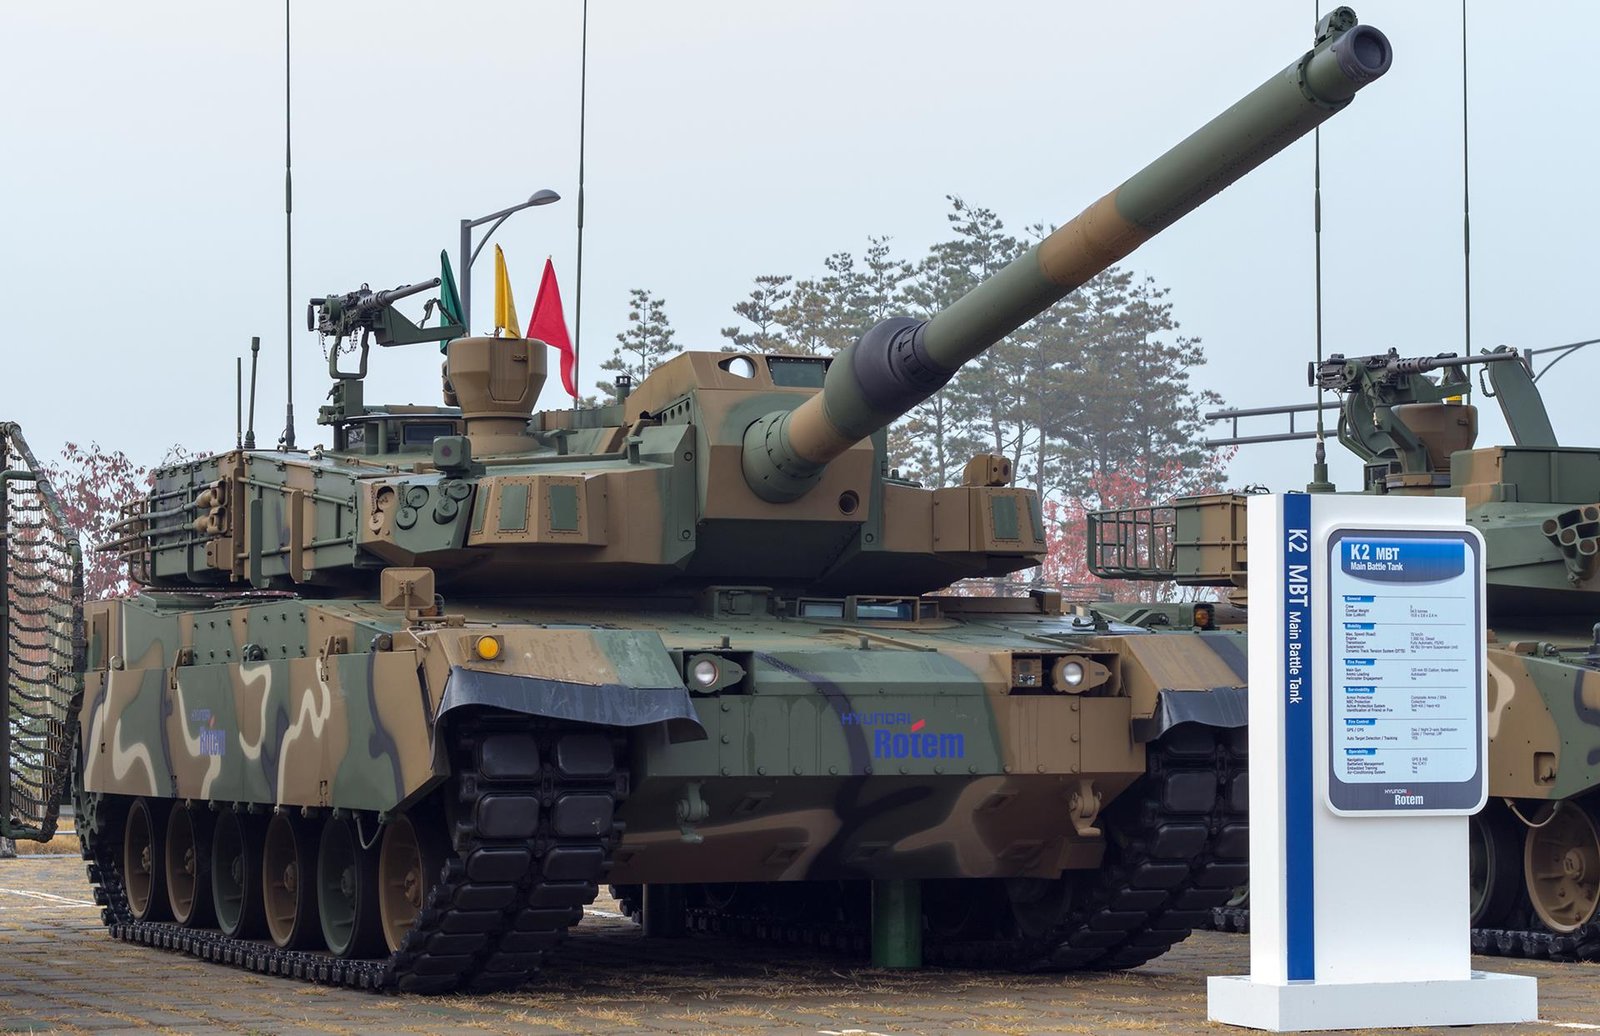 Koreańskie czołgi K2 Black Panther dla Polski, Koreańskie czołgi K2 Black Panther, Koreańskie czołgi K2 Black Panther, K2 Black Panther, Koreańskie czołgi K2, K2 Black Panther, K2